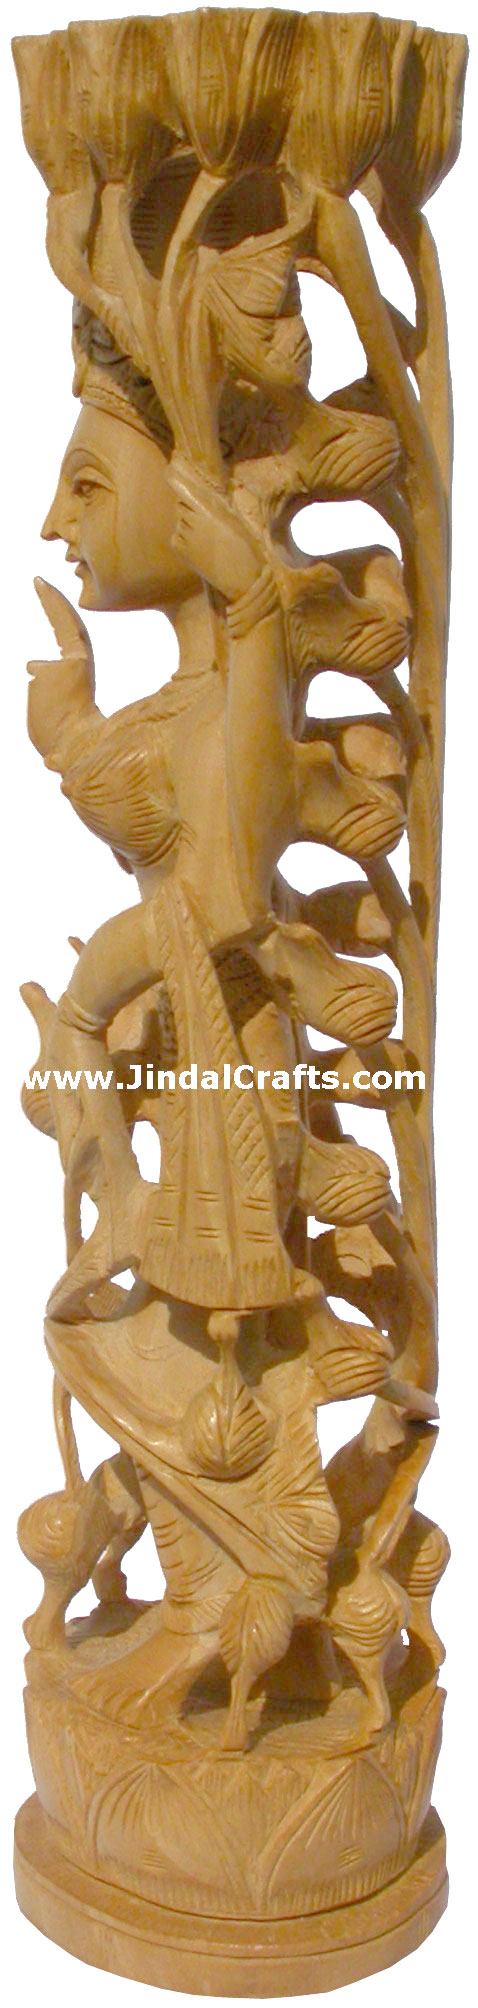 Wooden Sculpture Goddess Lakshmi Handcarved Hindu India Carving Art Craft Novica